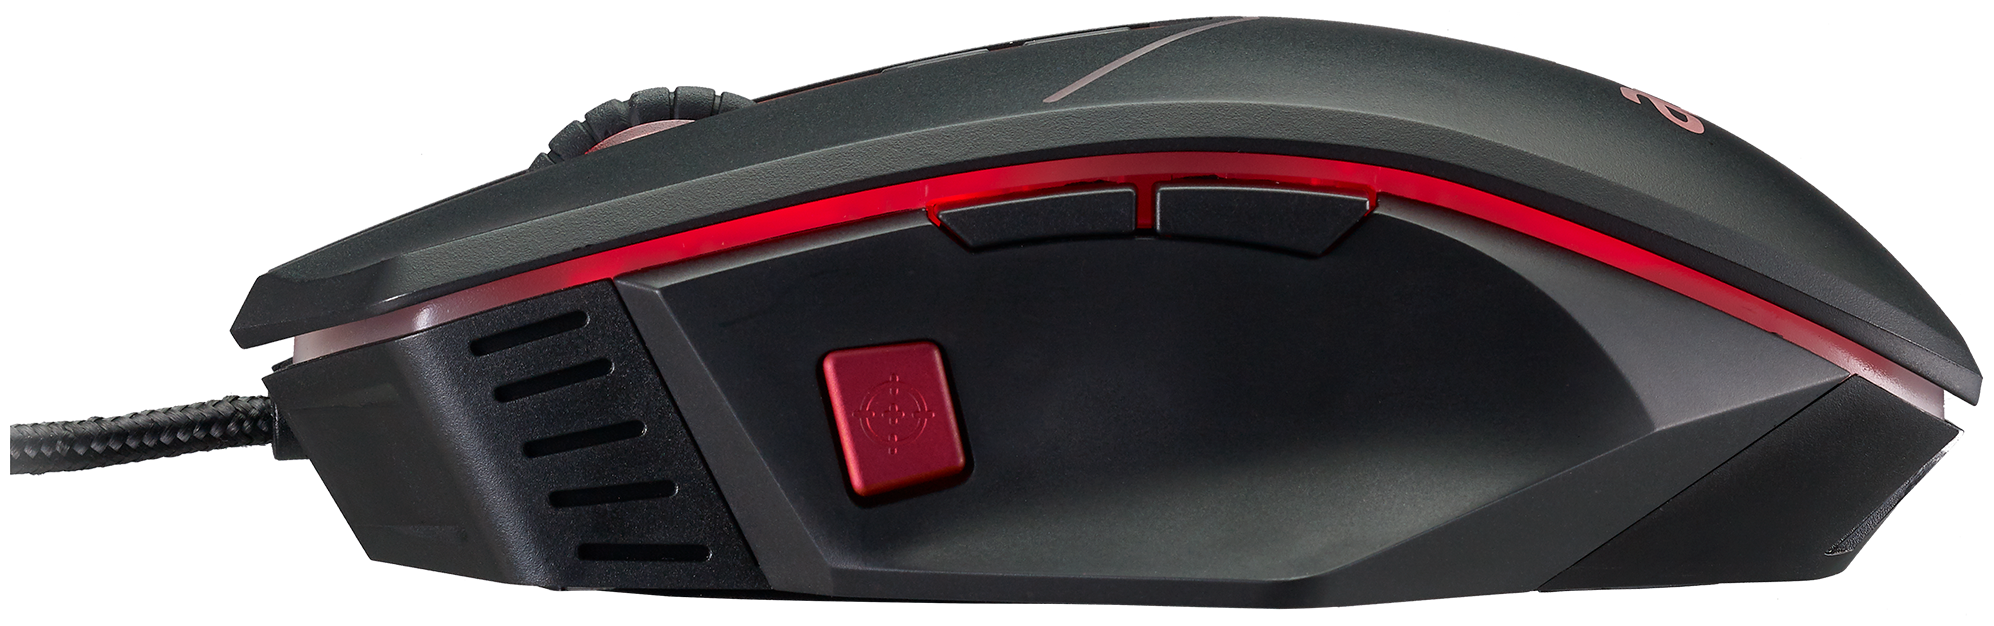 Мышь Acer Nitro NMW120, игровая, оптическая, проводная, USB, черный и красный [gp.mce11.01r] - фото №3